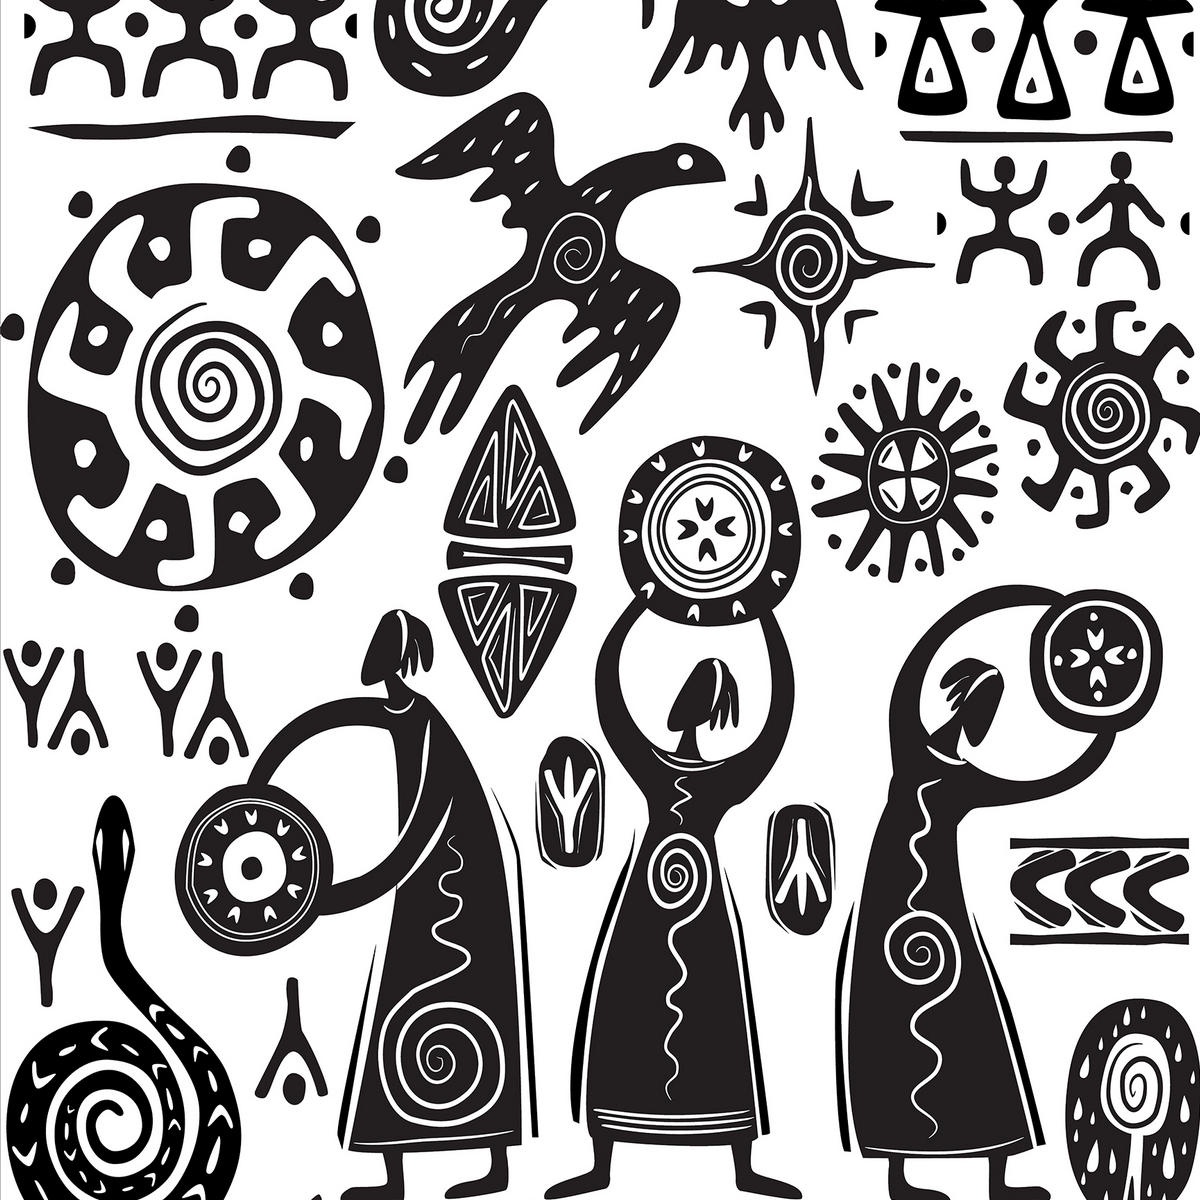 Этнические элементы это. Орнамент Саймалуу Таш. Петроглифы Саймалуу Таш+символы. Наскальные рисунки Саймалуу Таш. Саймалуу Таш петроглифы.